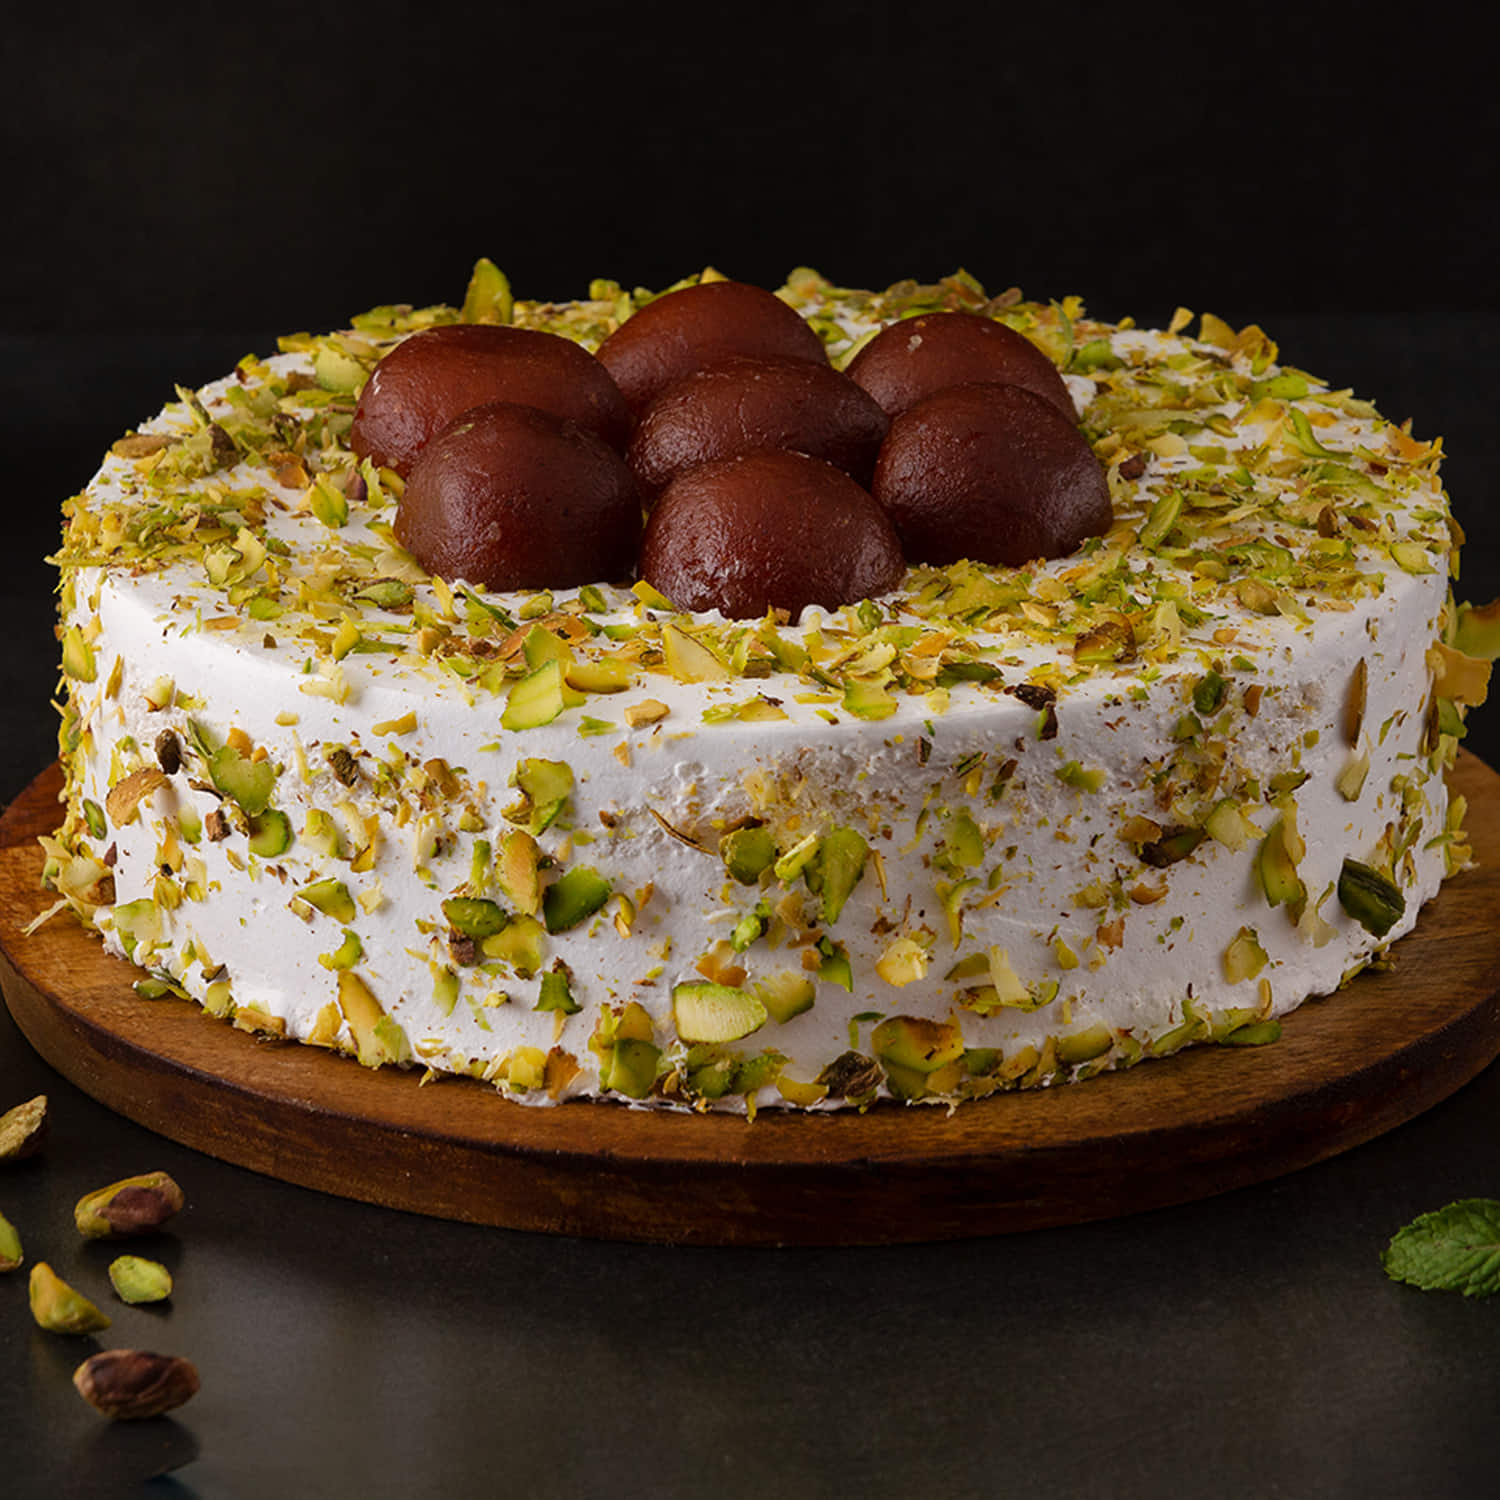 Gulab jamun cake | Cake recipe with readymade Gulab jamun mix